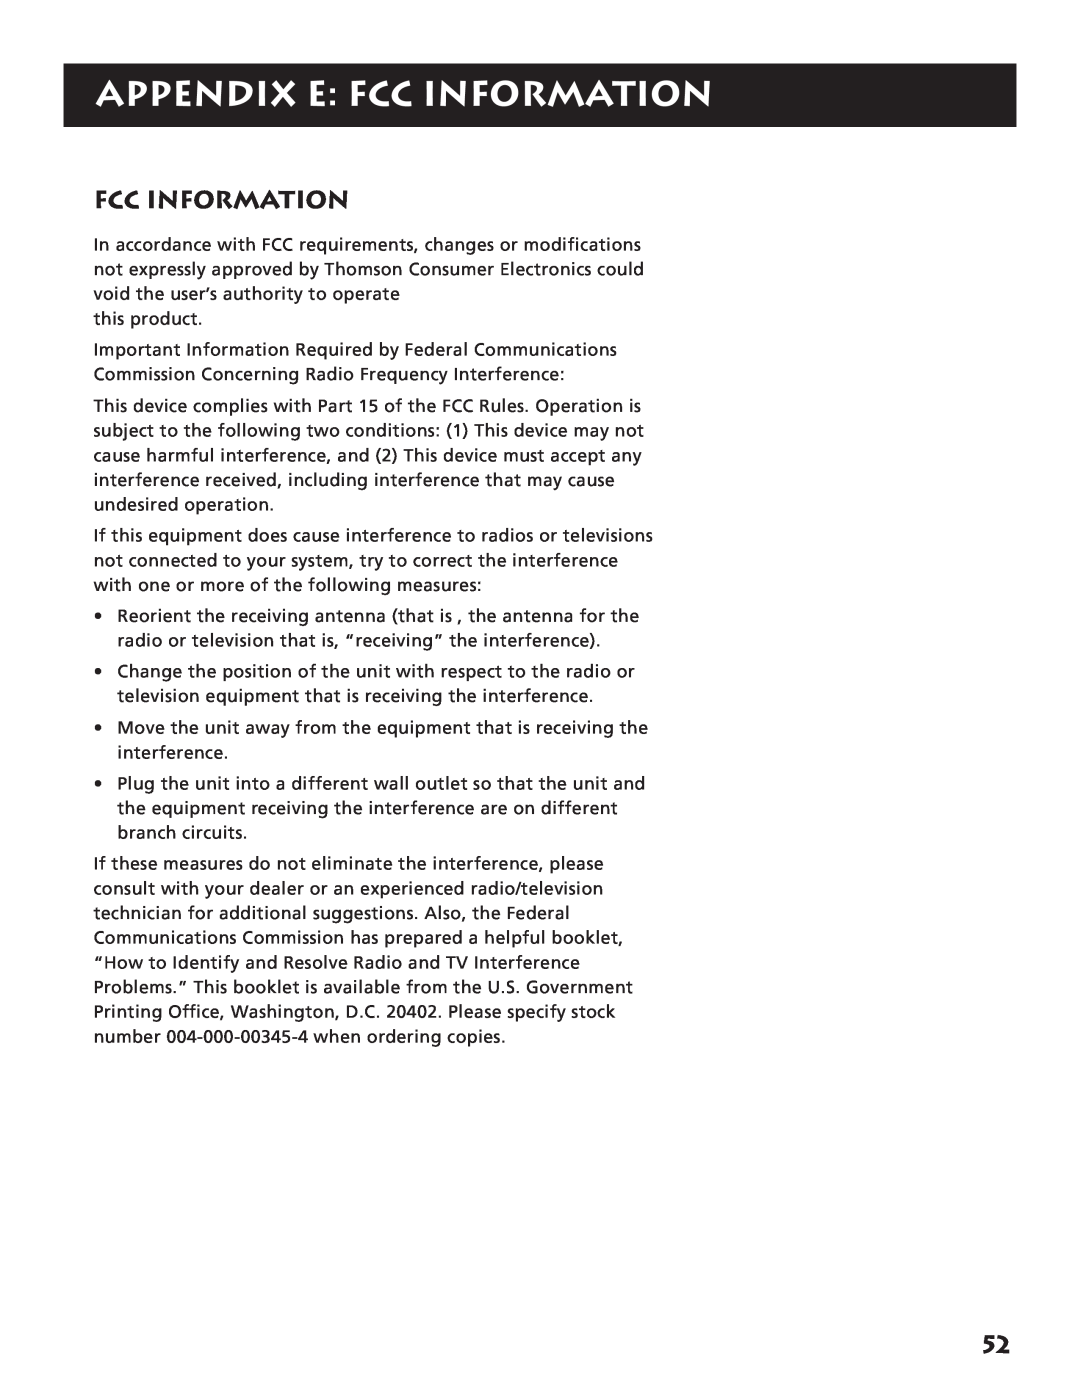 RCA RV3693 manual Appendix E Fcc Information 